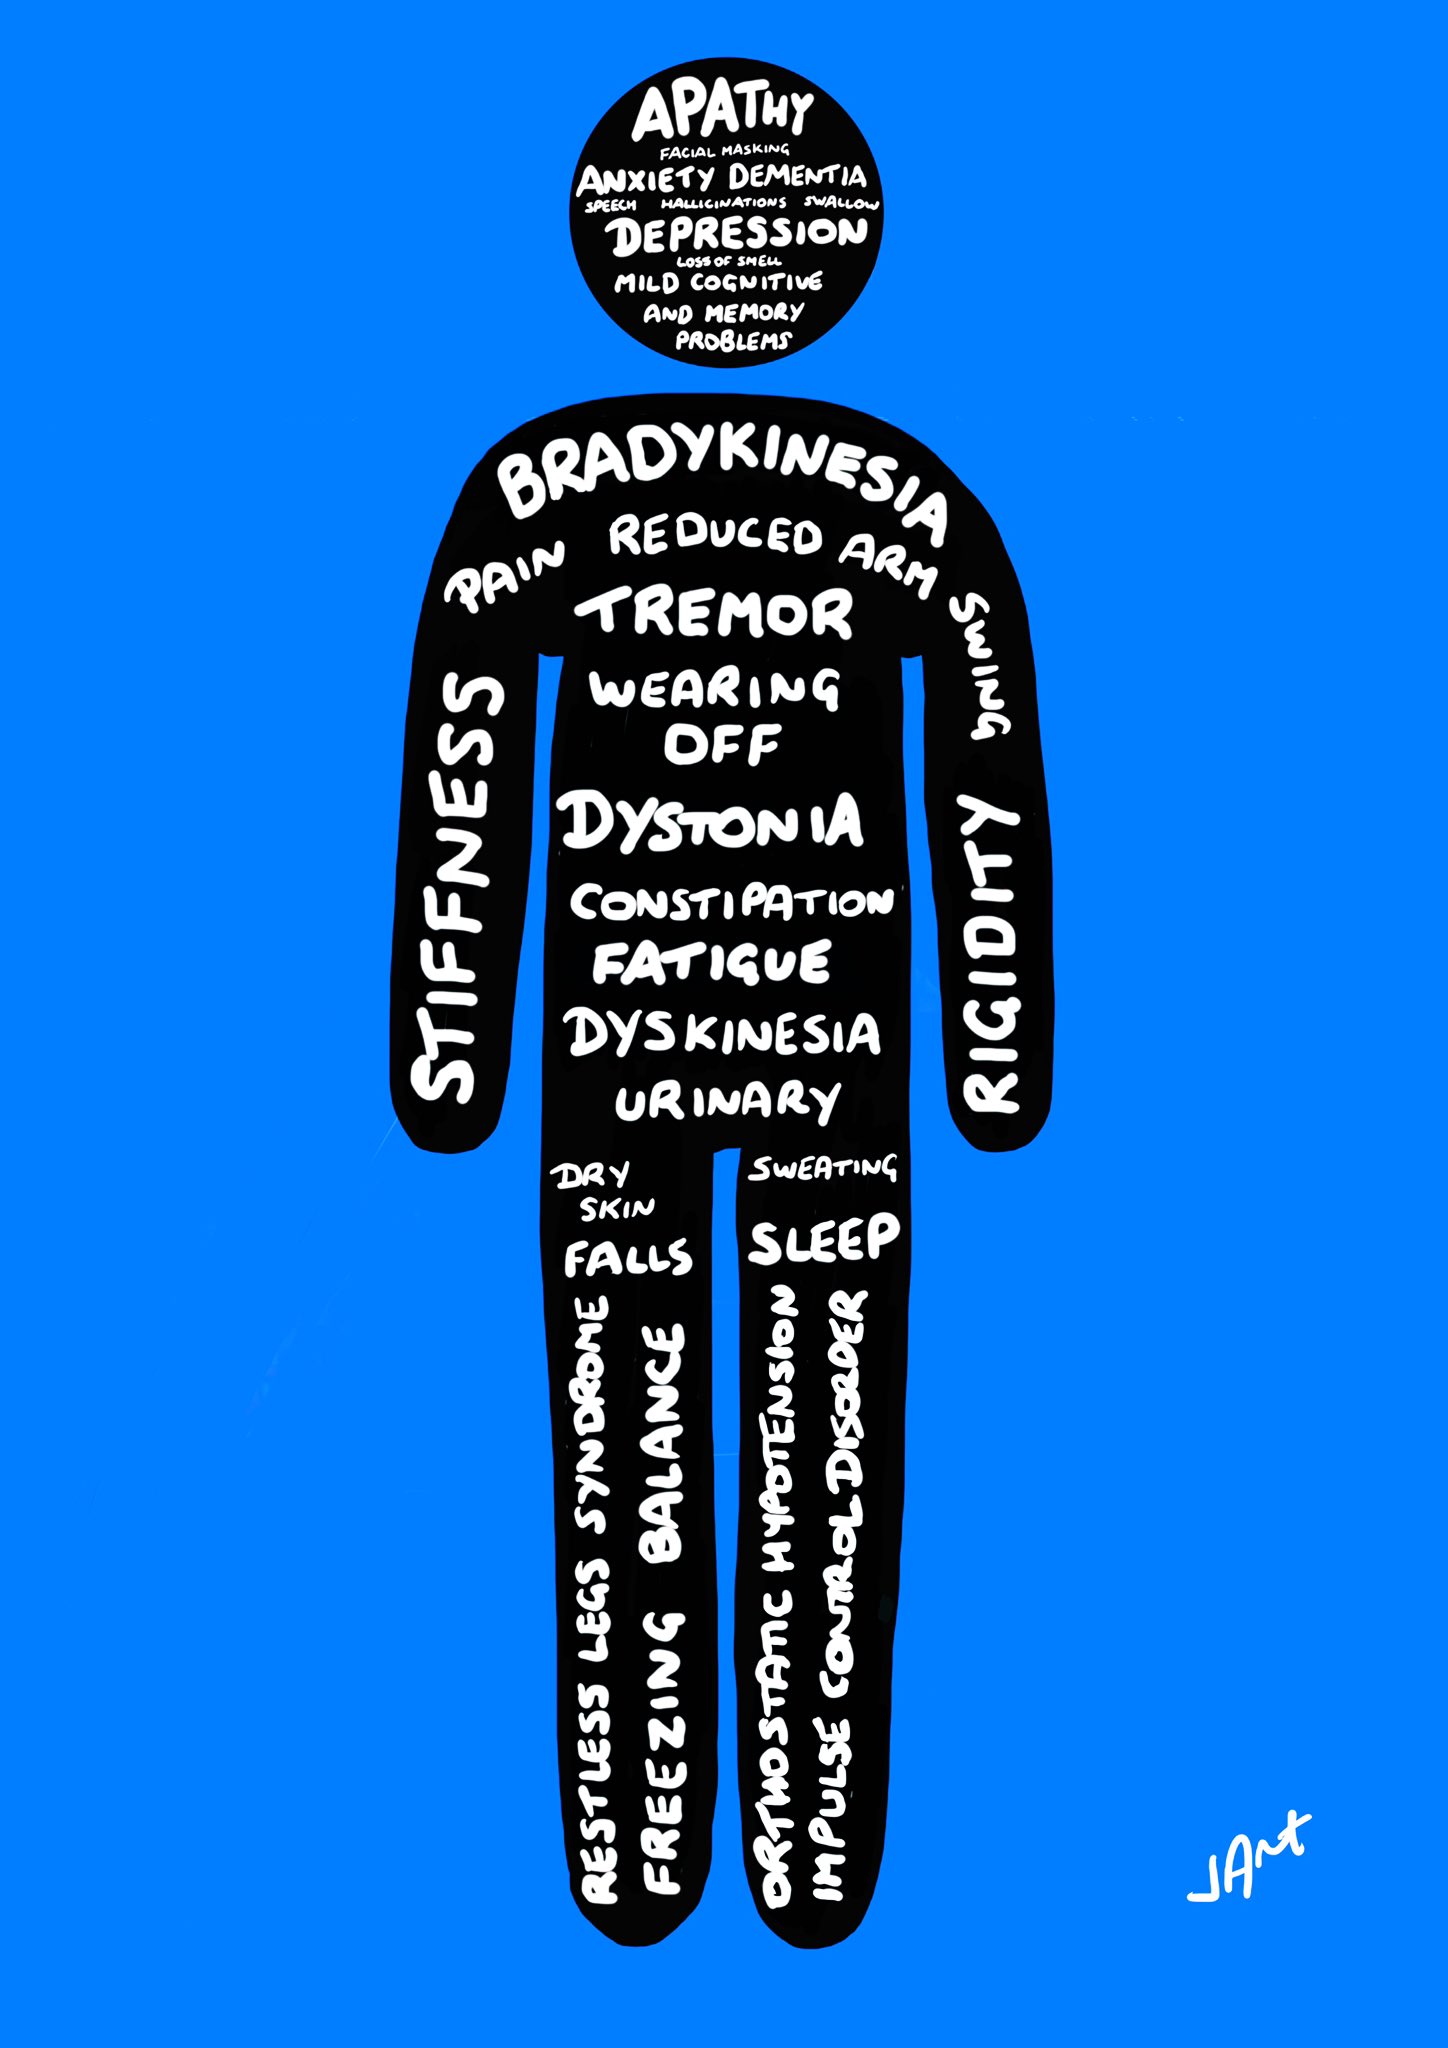 The many Parkinsons symptoms!  My Parkinson